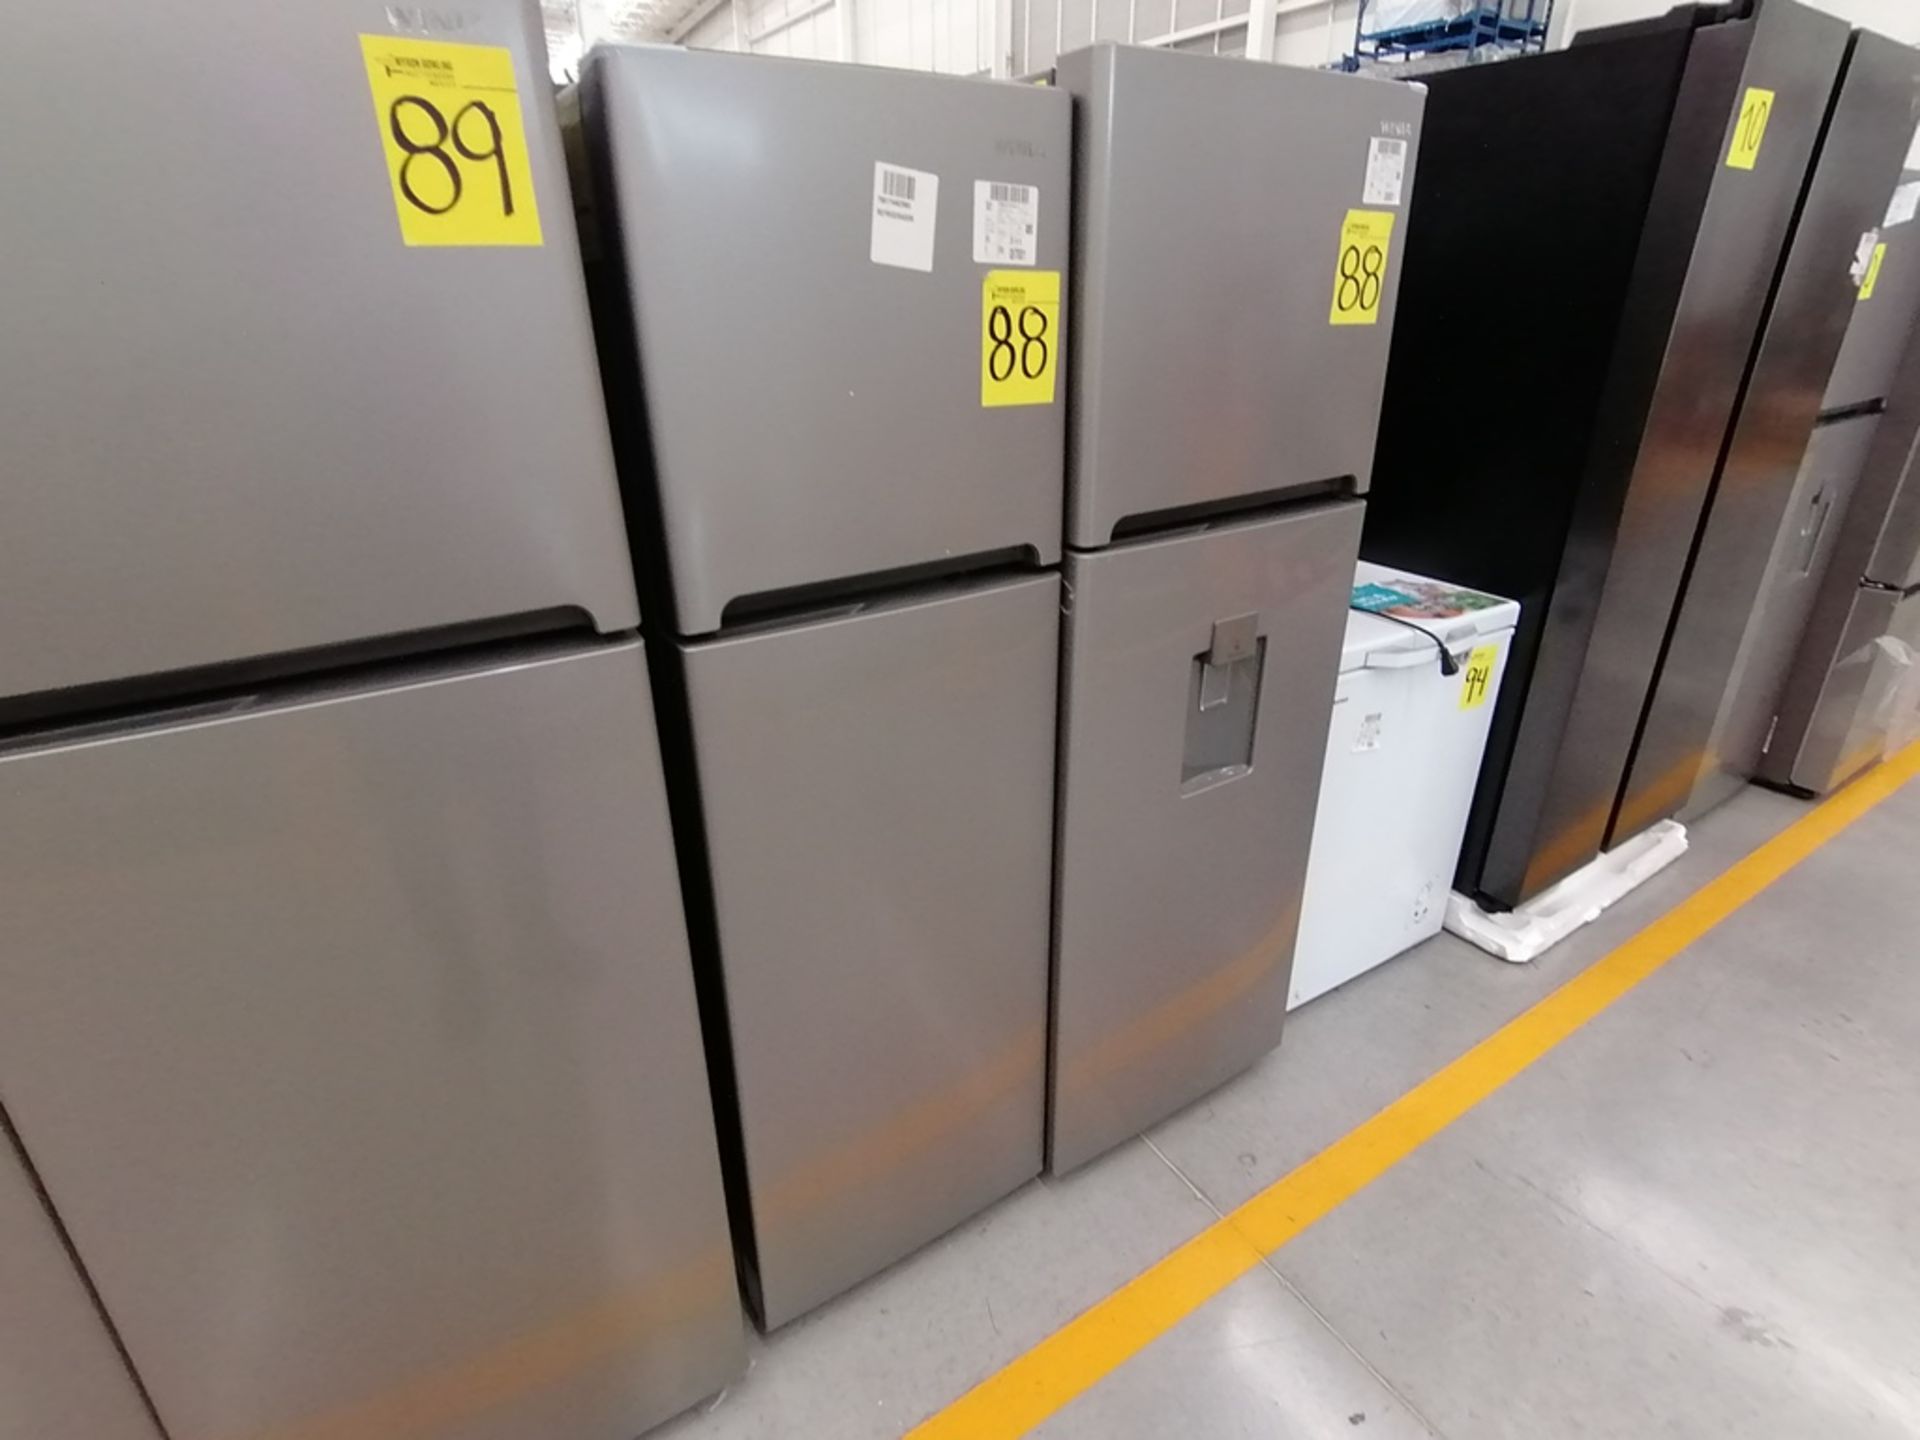 Lote de 2 refrigeradores incluye: 1 Refrigerador, Marca Winia, Modelo DFR25210GN, Serie MR219N11602 - Image 2 of 15